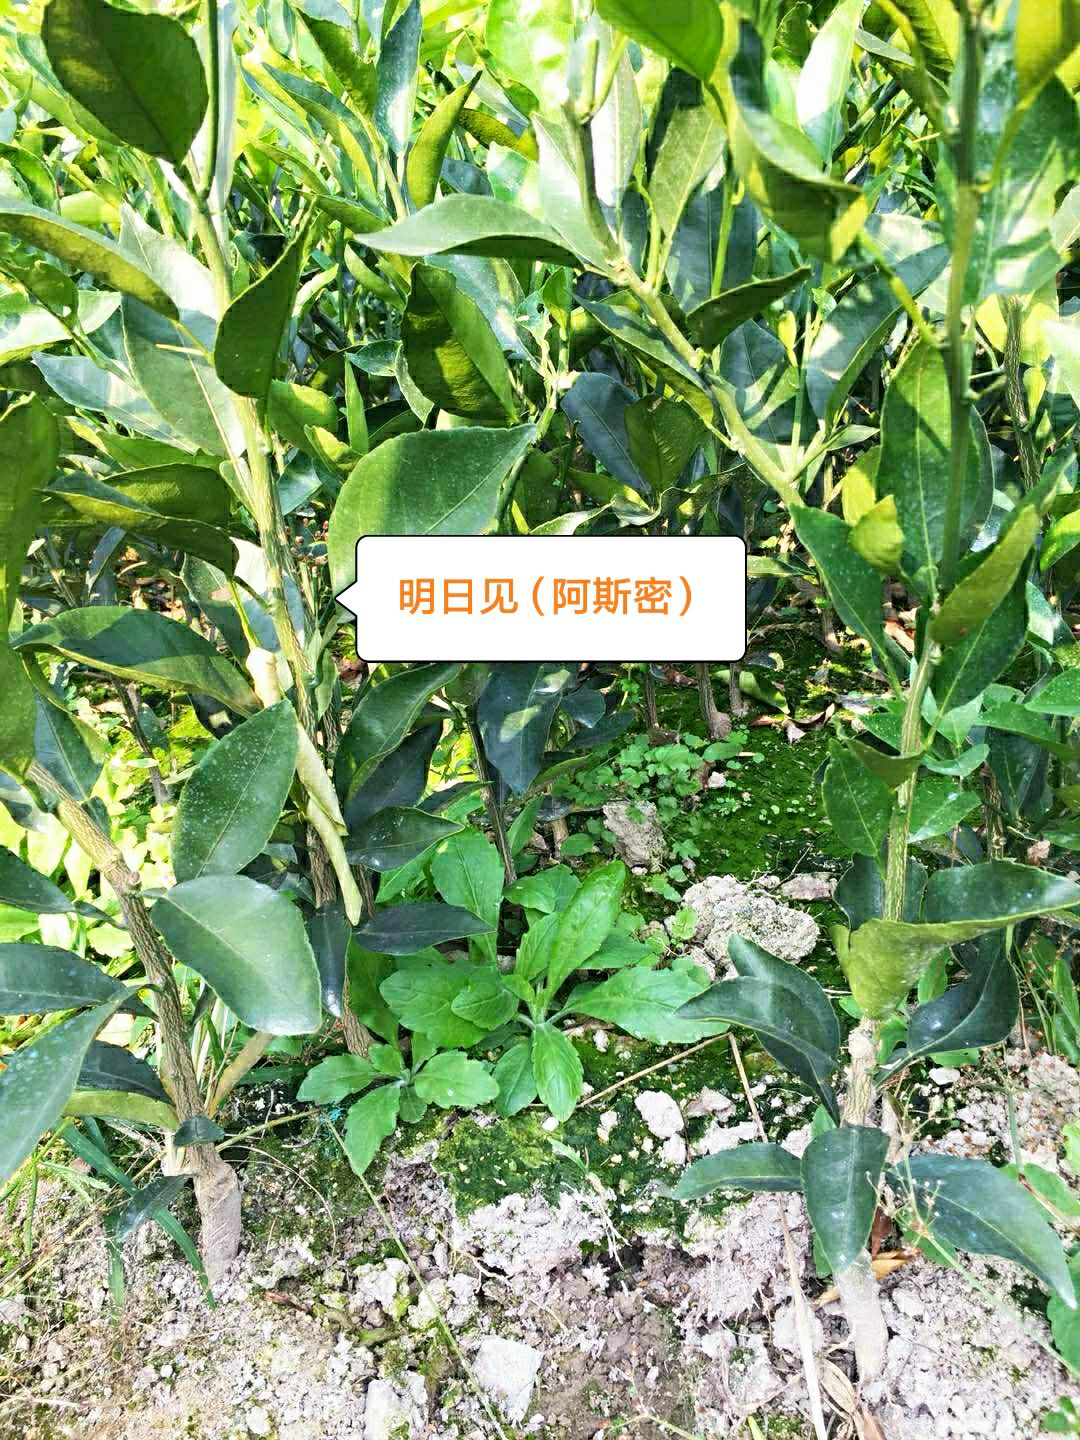 福建漳州市平和县明日见柑橘苗最新产地行情趋